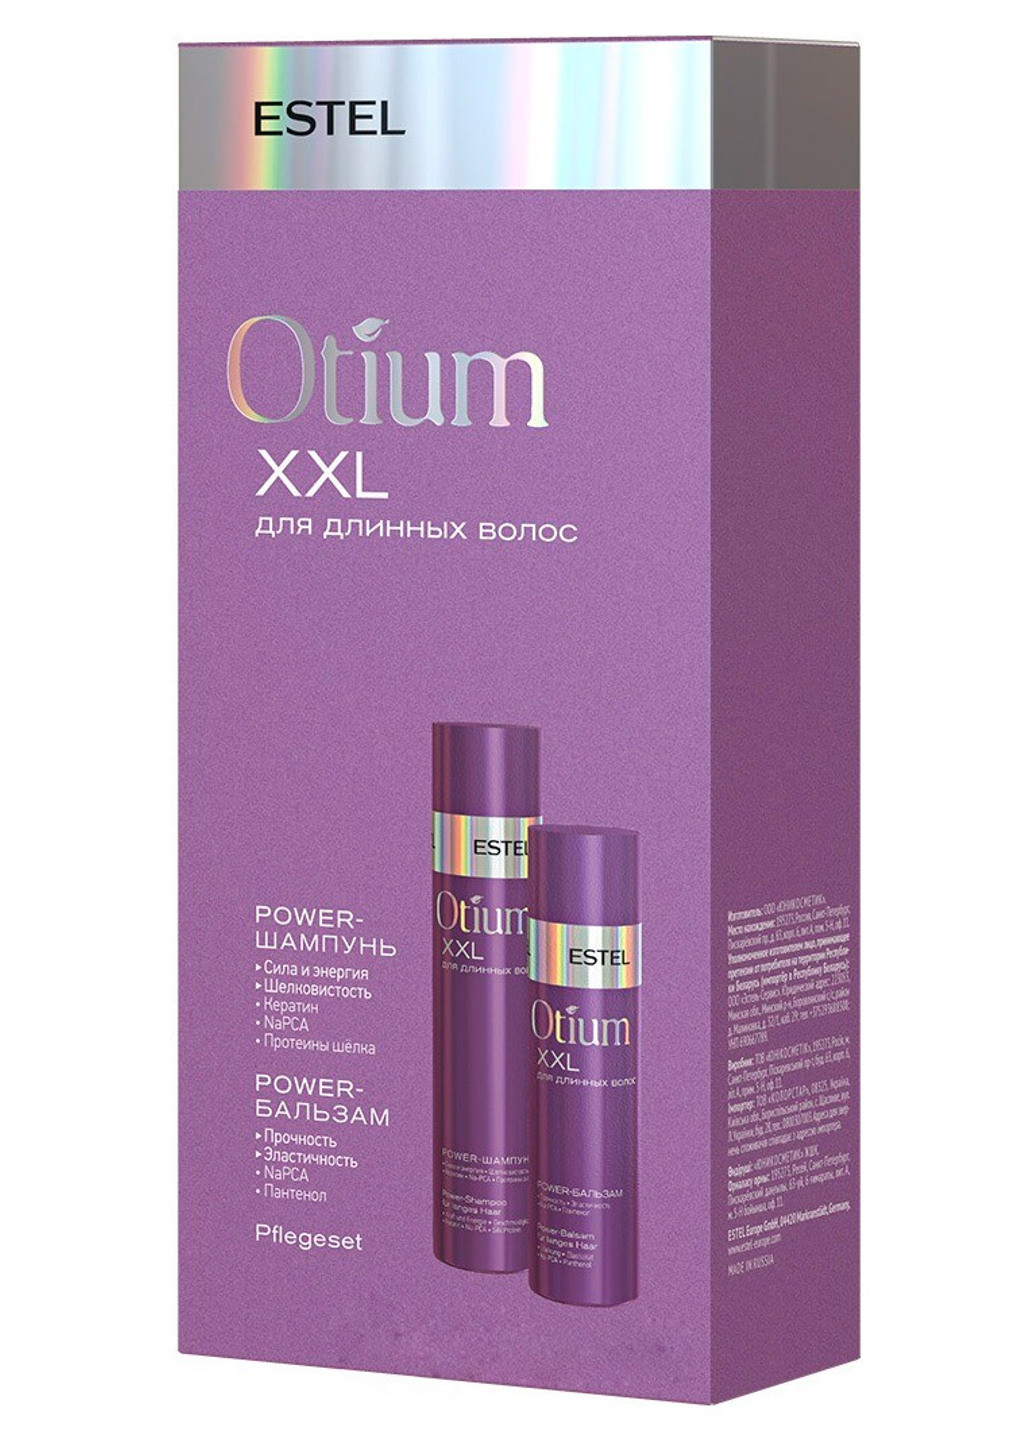 Набор для длинных волос Otium XXL 2 шт. (200 мл+250 мл) Estel Professional (201695044)